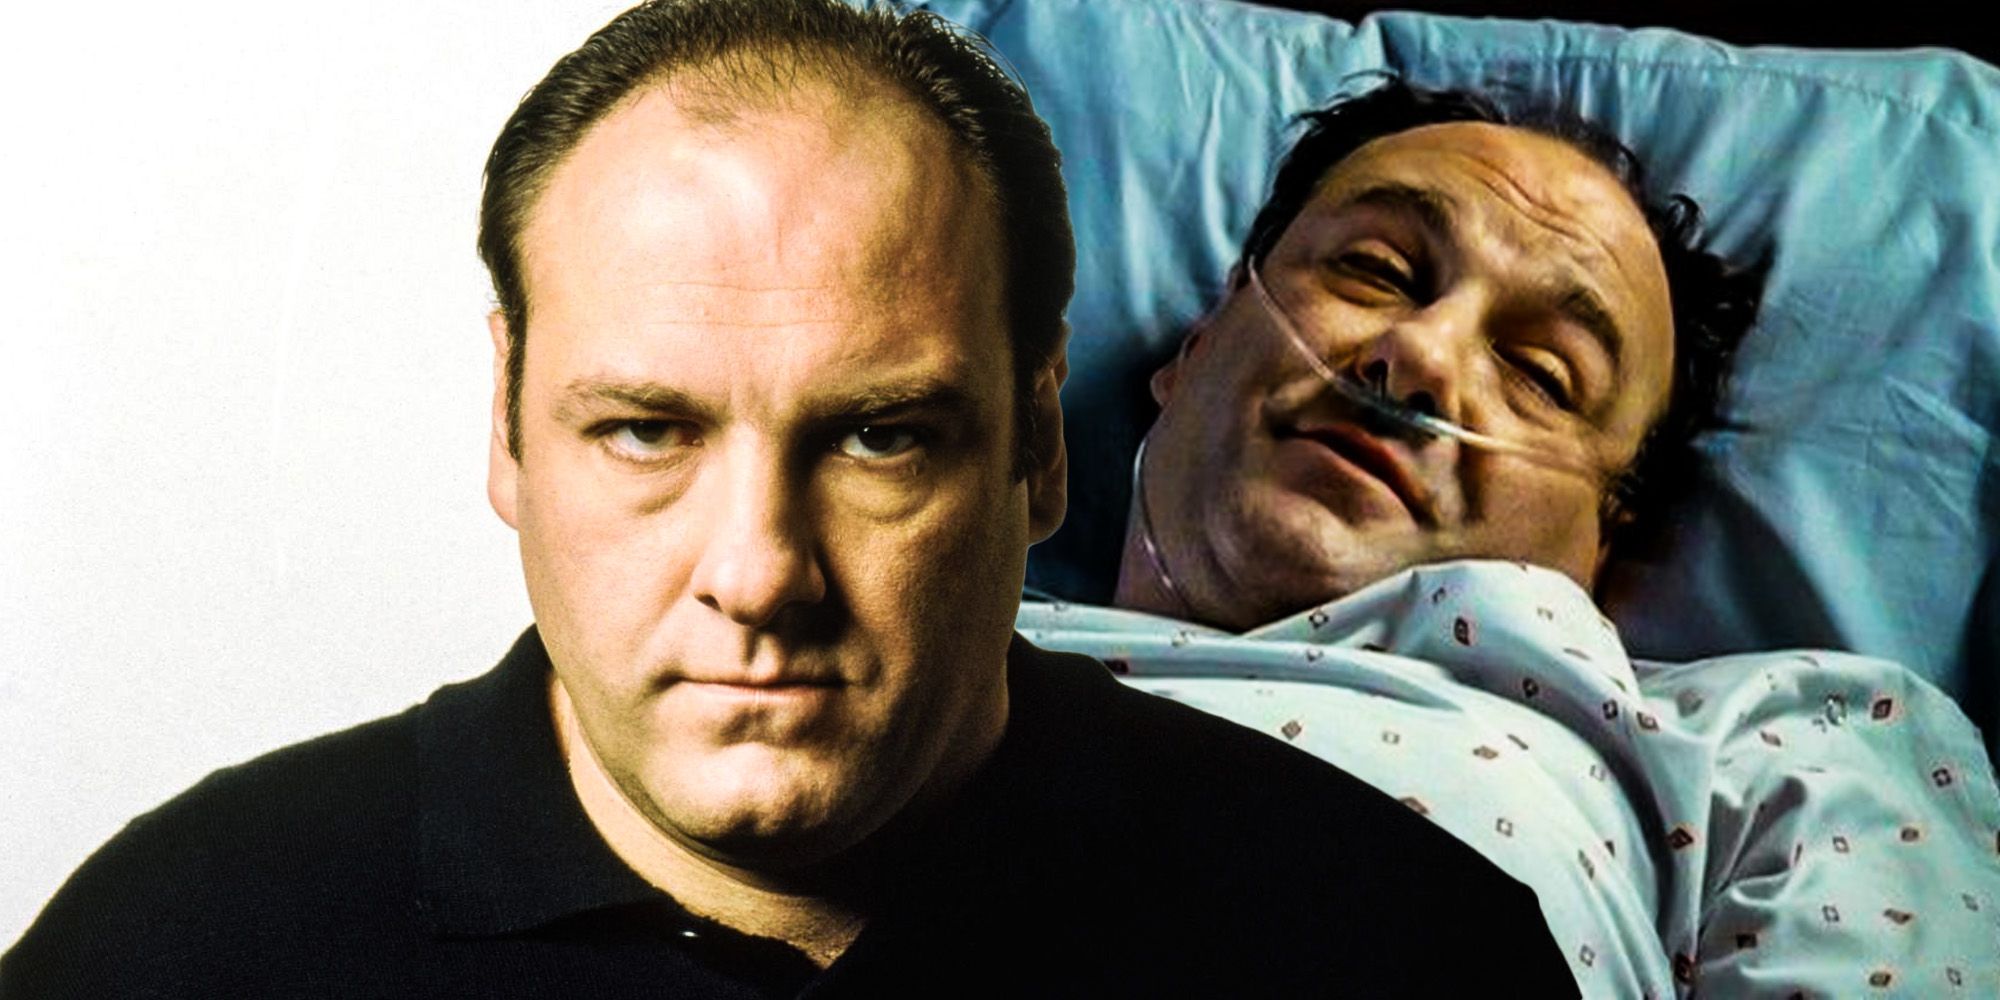 Photos: The face of Tony Soprano